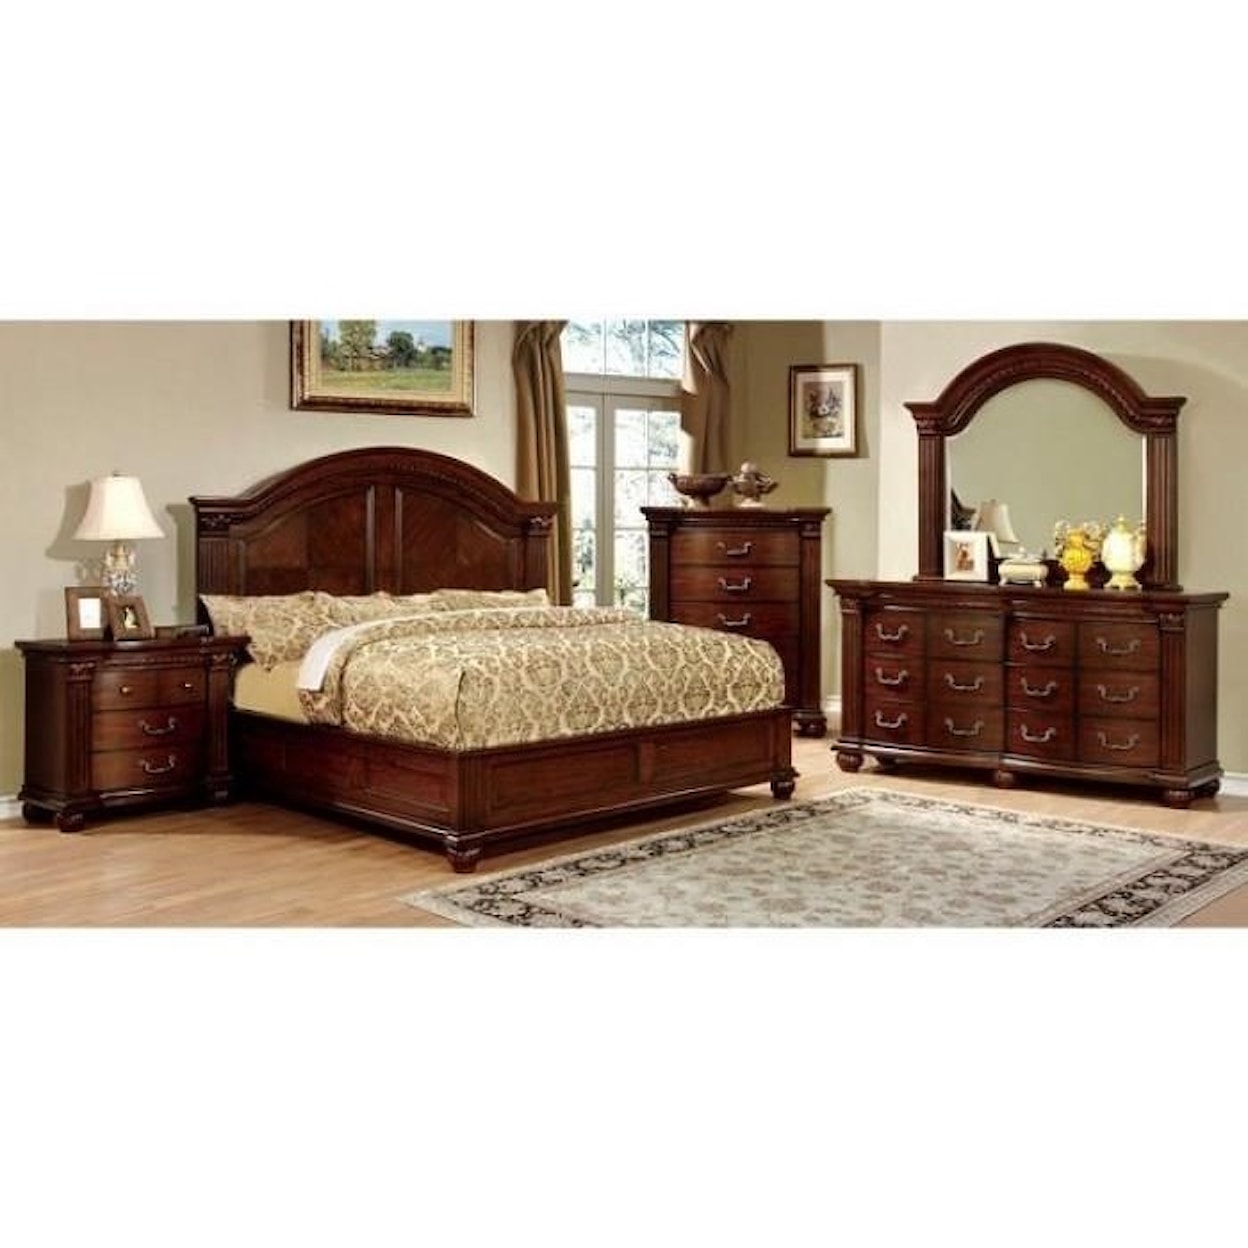 Furniture of America - FOA Grandom King Bed